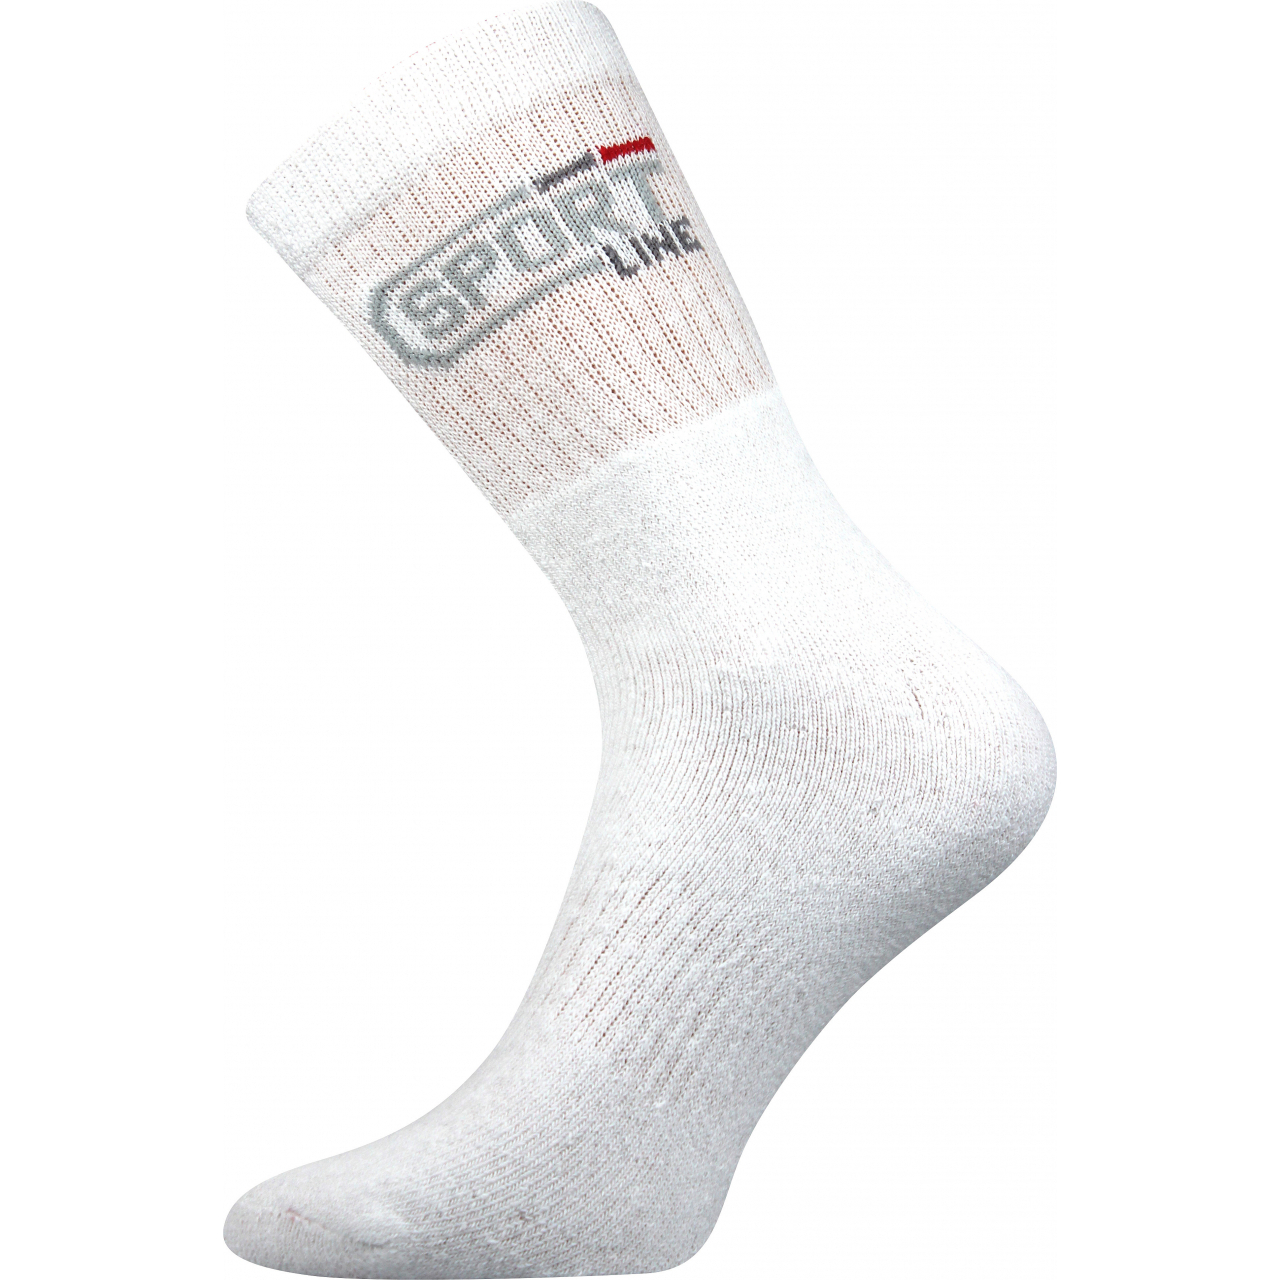 Ponožky unisex klasické Boma Spot - bílé, 43-46